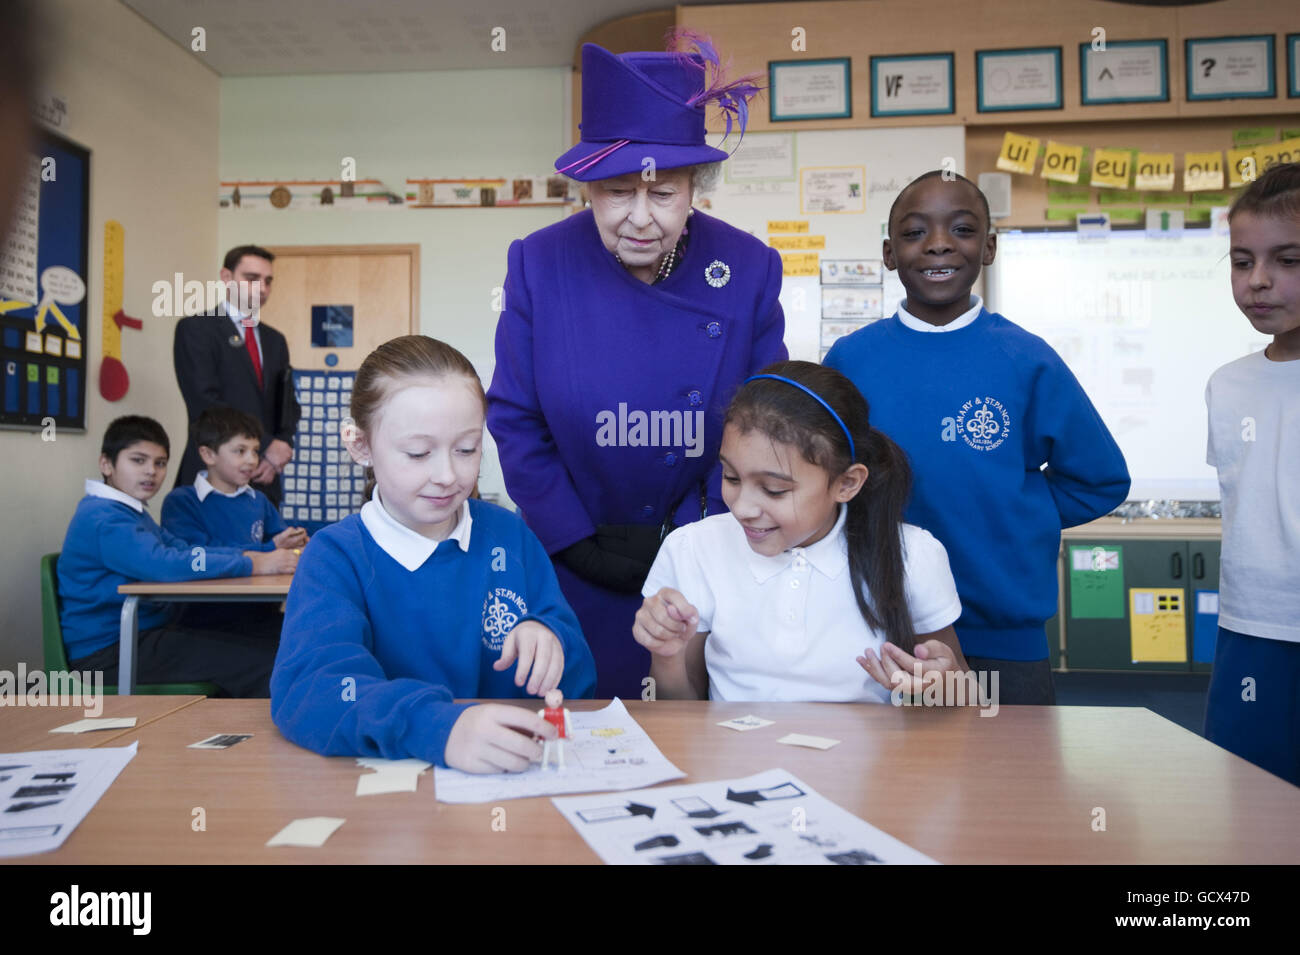 La reine Elizabeth II visite l'école primaire de l'église St Mary et St Pancras à Londres où elle a rencontré des élèves dans les salles de classe et a regardé des élèves lire des extraits de la bible dans le cadre du projet de la Bible YouTube. Banque D'Images